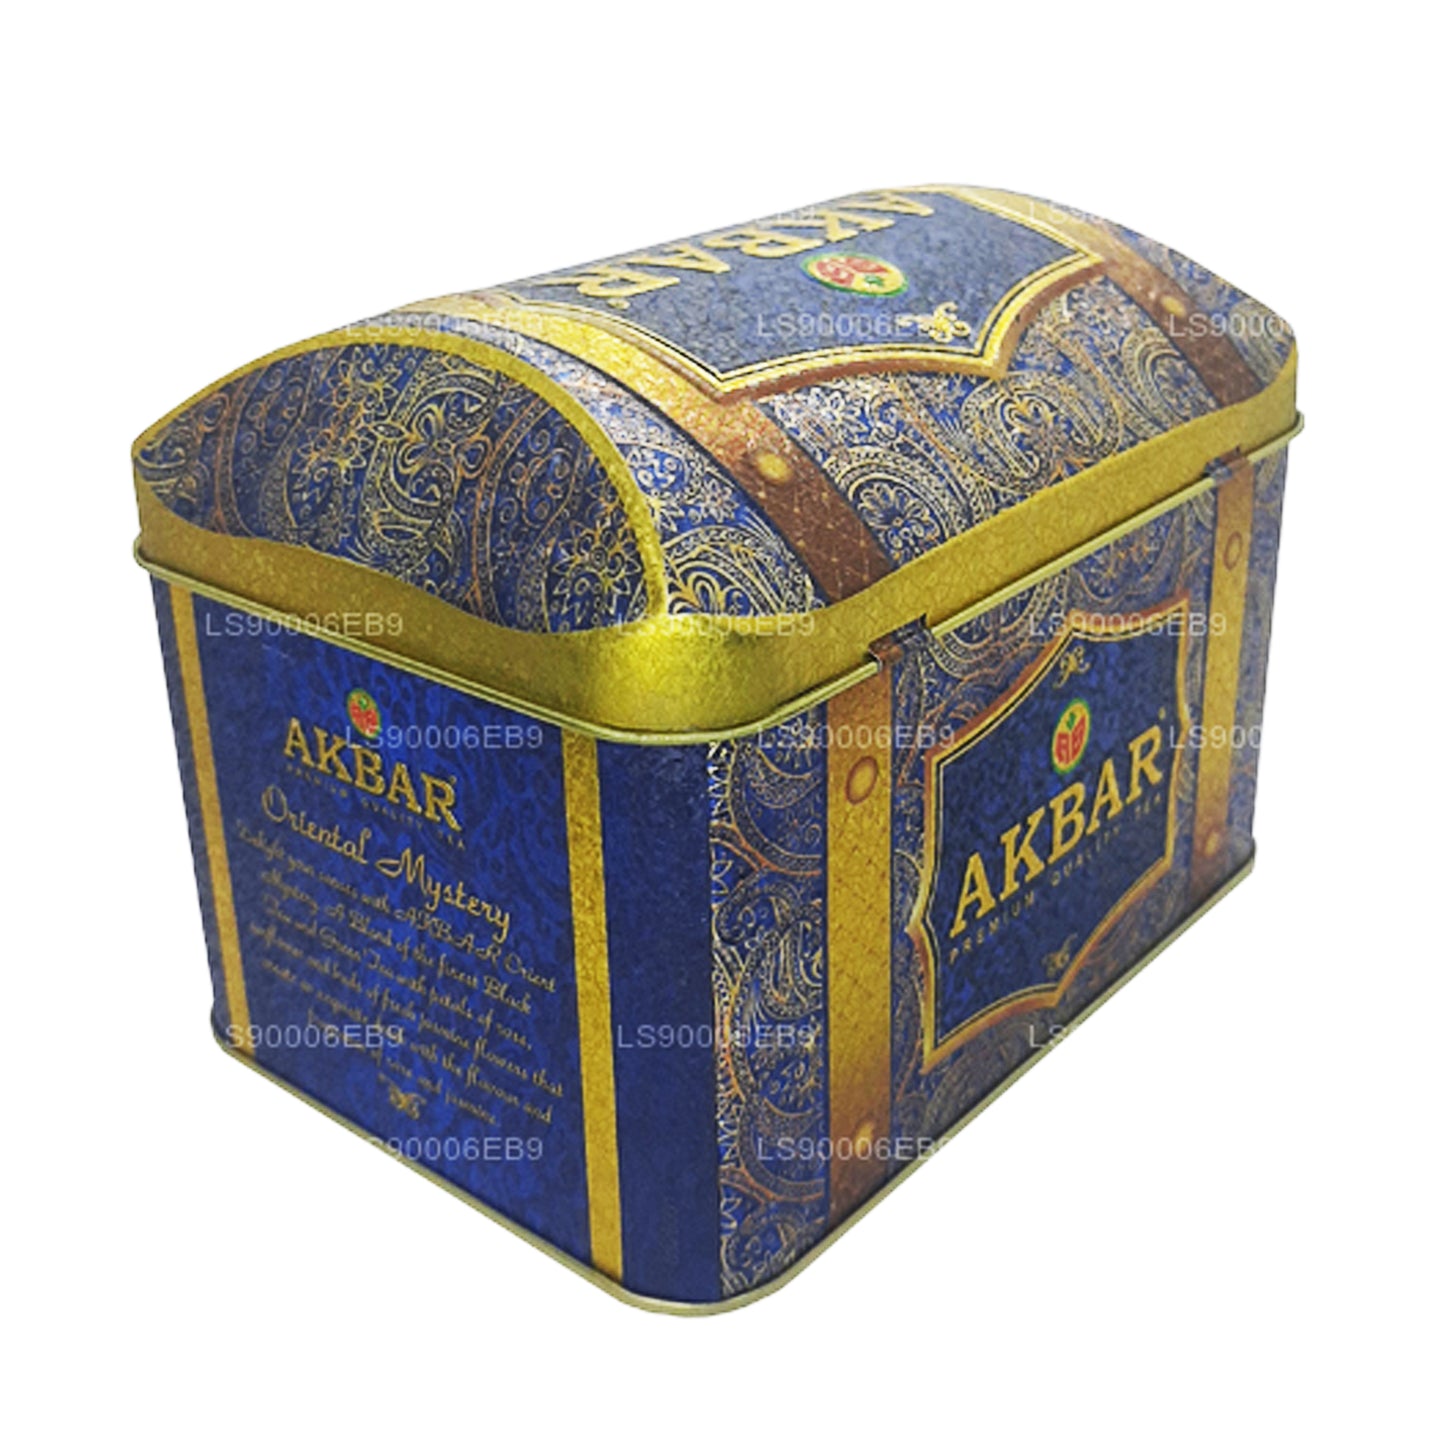 Akbar eksklusiivne kollektsioon Oriental Mystery Treasure Box (250g)